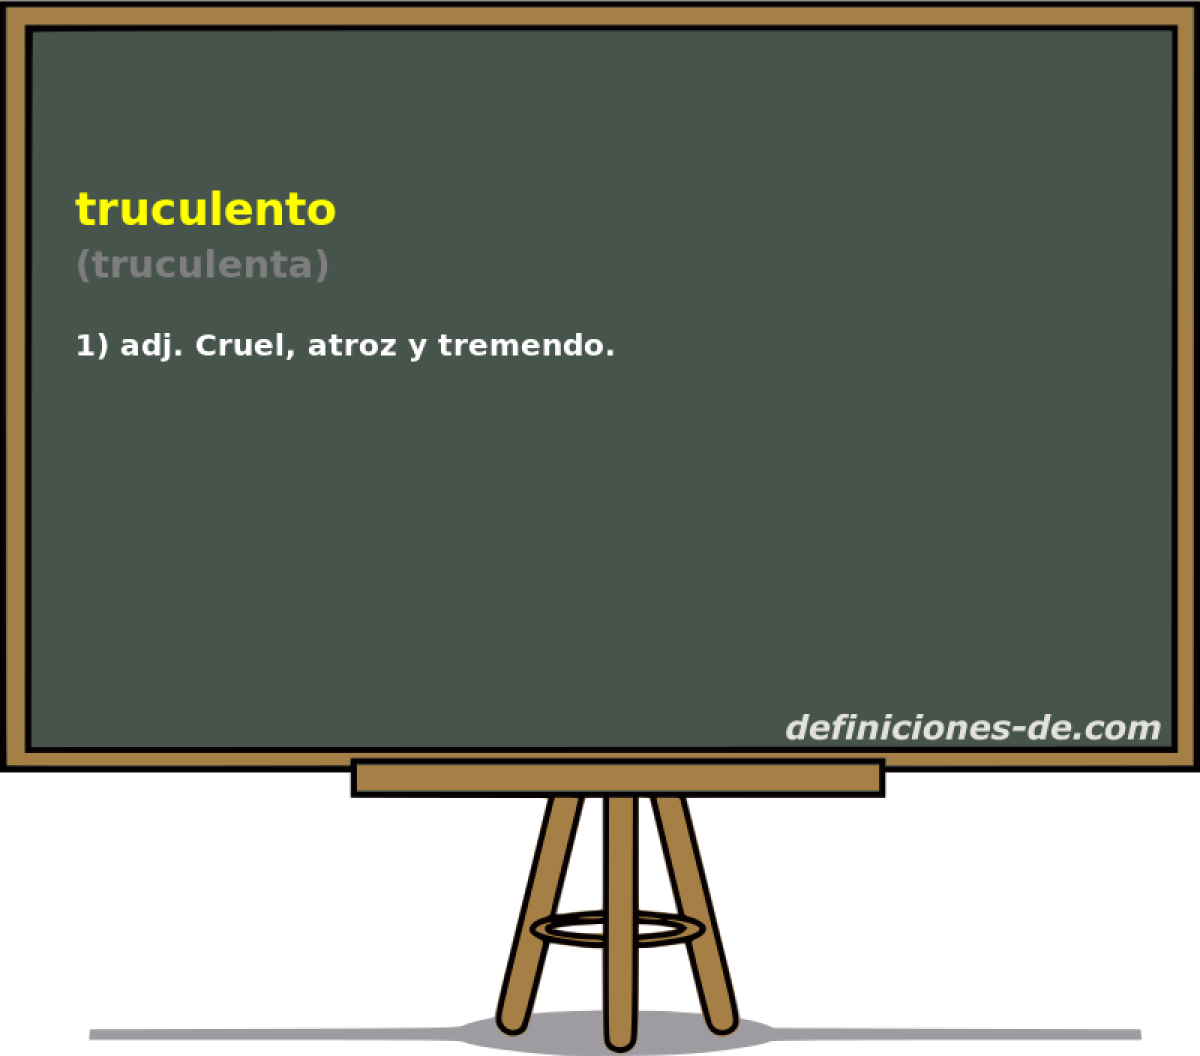 truculento (truculenta)